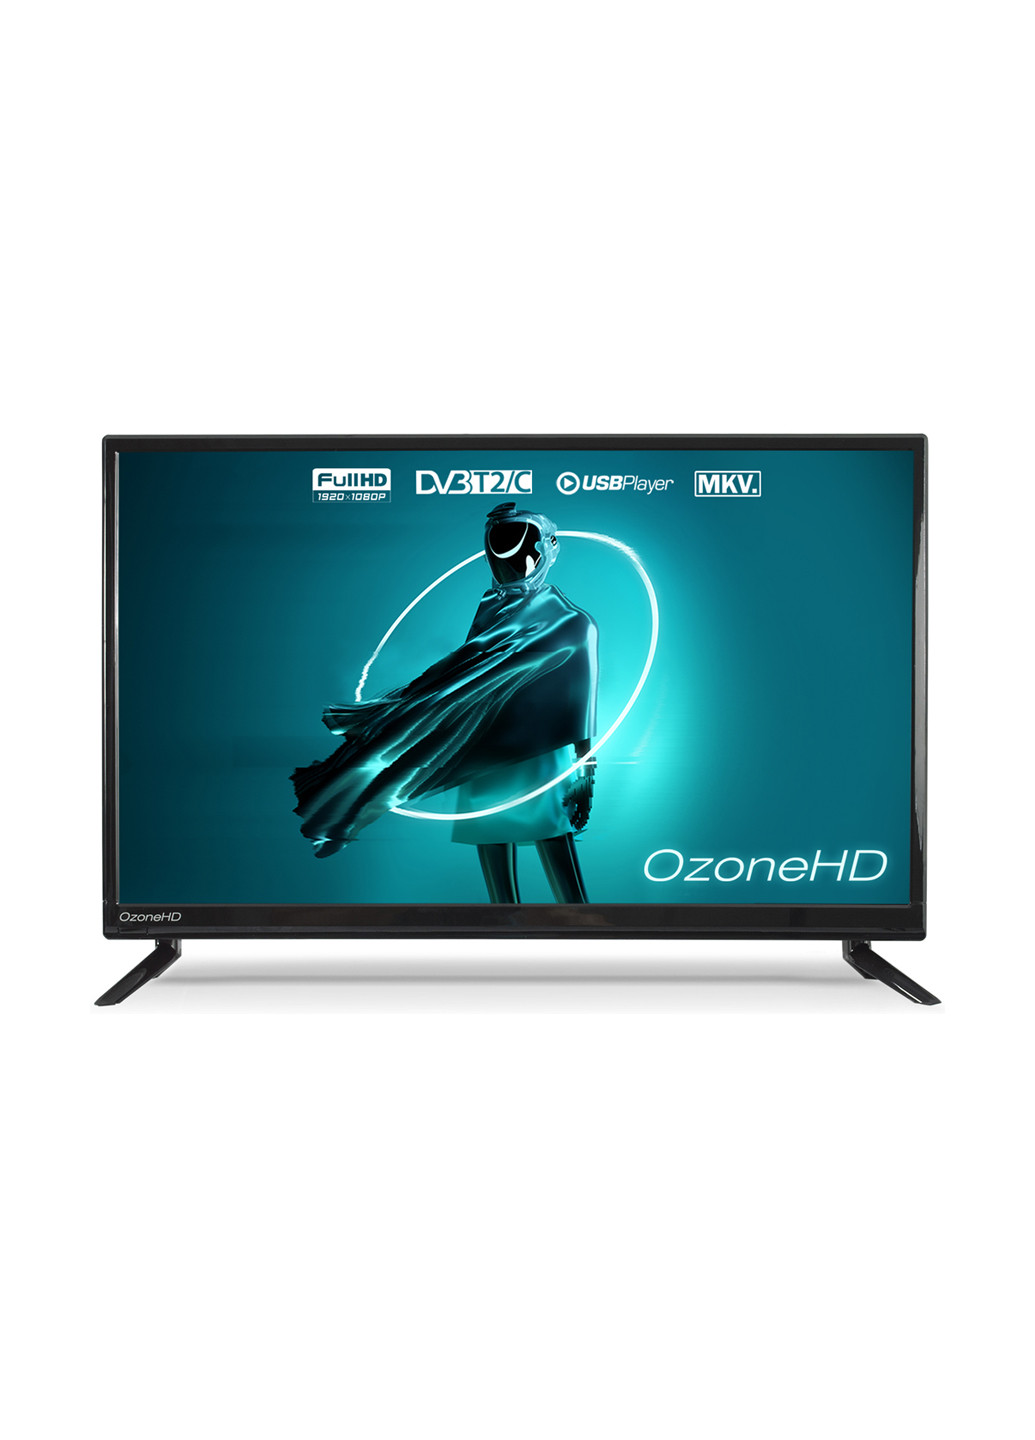 Телевізор OzoneHD 22fq92t2 (155052700)